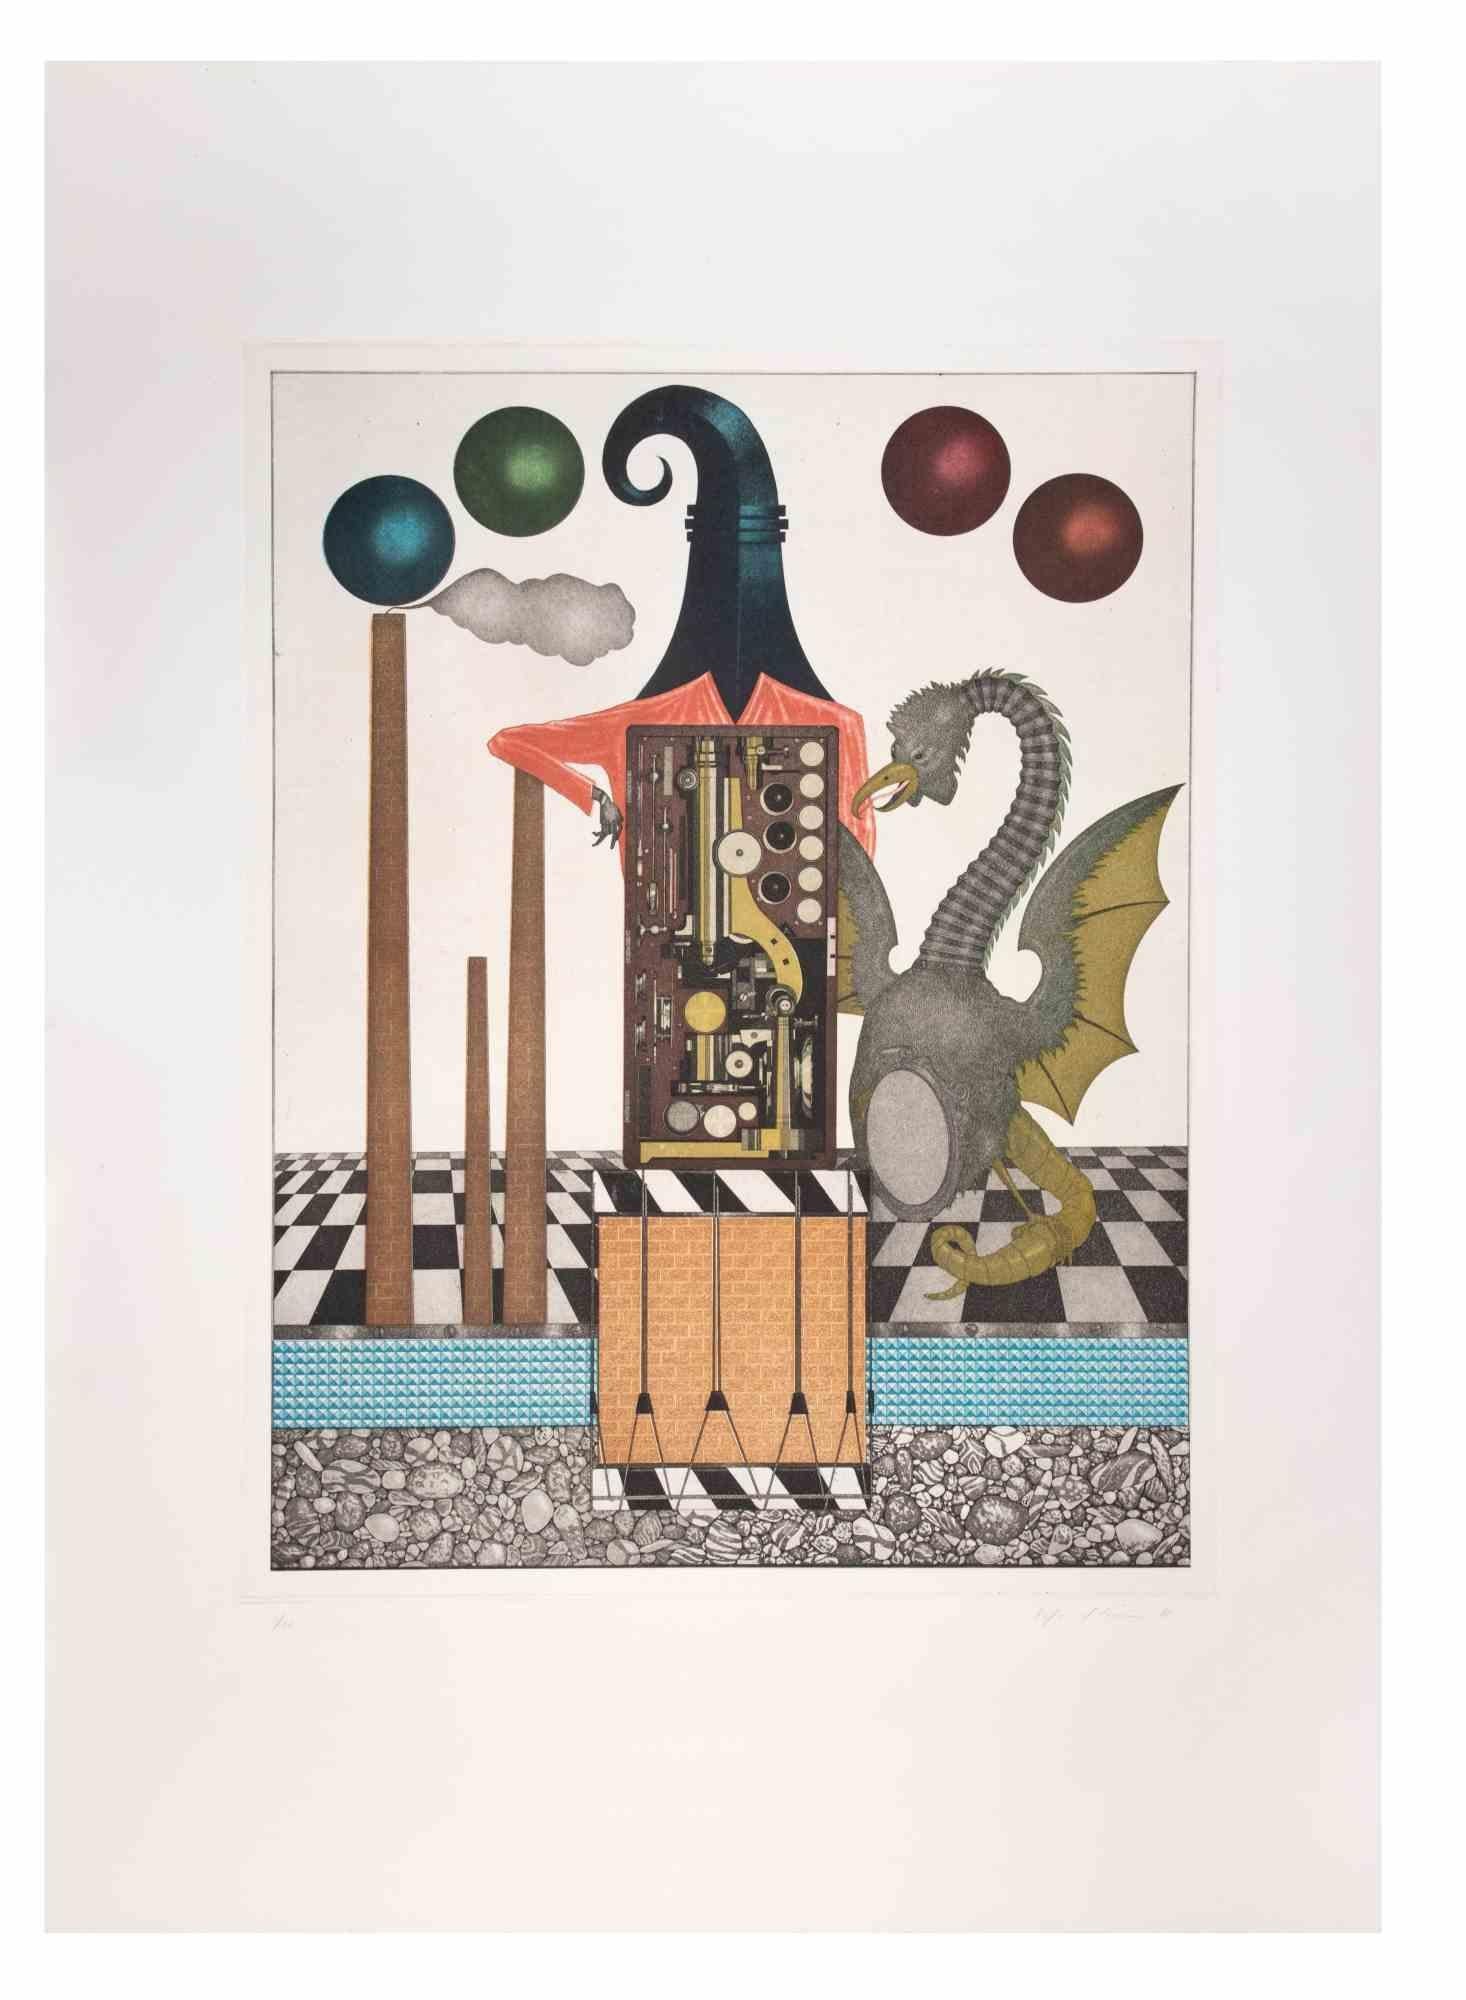 Basilisk ist ein zeitgenössisches Kunstwerk des Künstlers Fifo Stricker aus dem Jahr 1985.

Gemischte farbige Aquatinta und Radierung. 

Vom Künstler am rechten unteren Rand handsigniert und datiert.

Am linken unteren Rand nummeriert. Auflage von